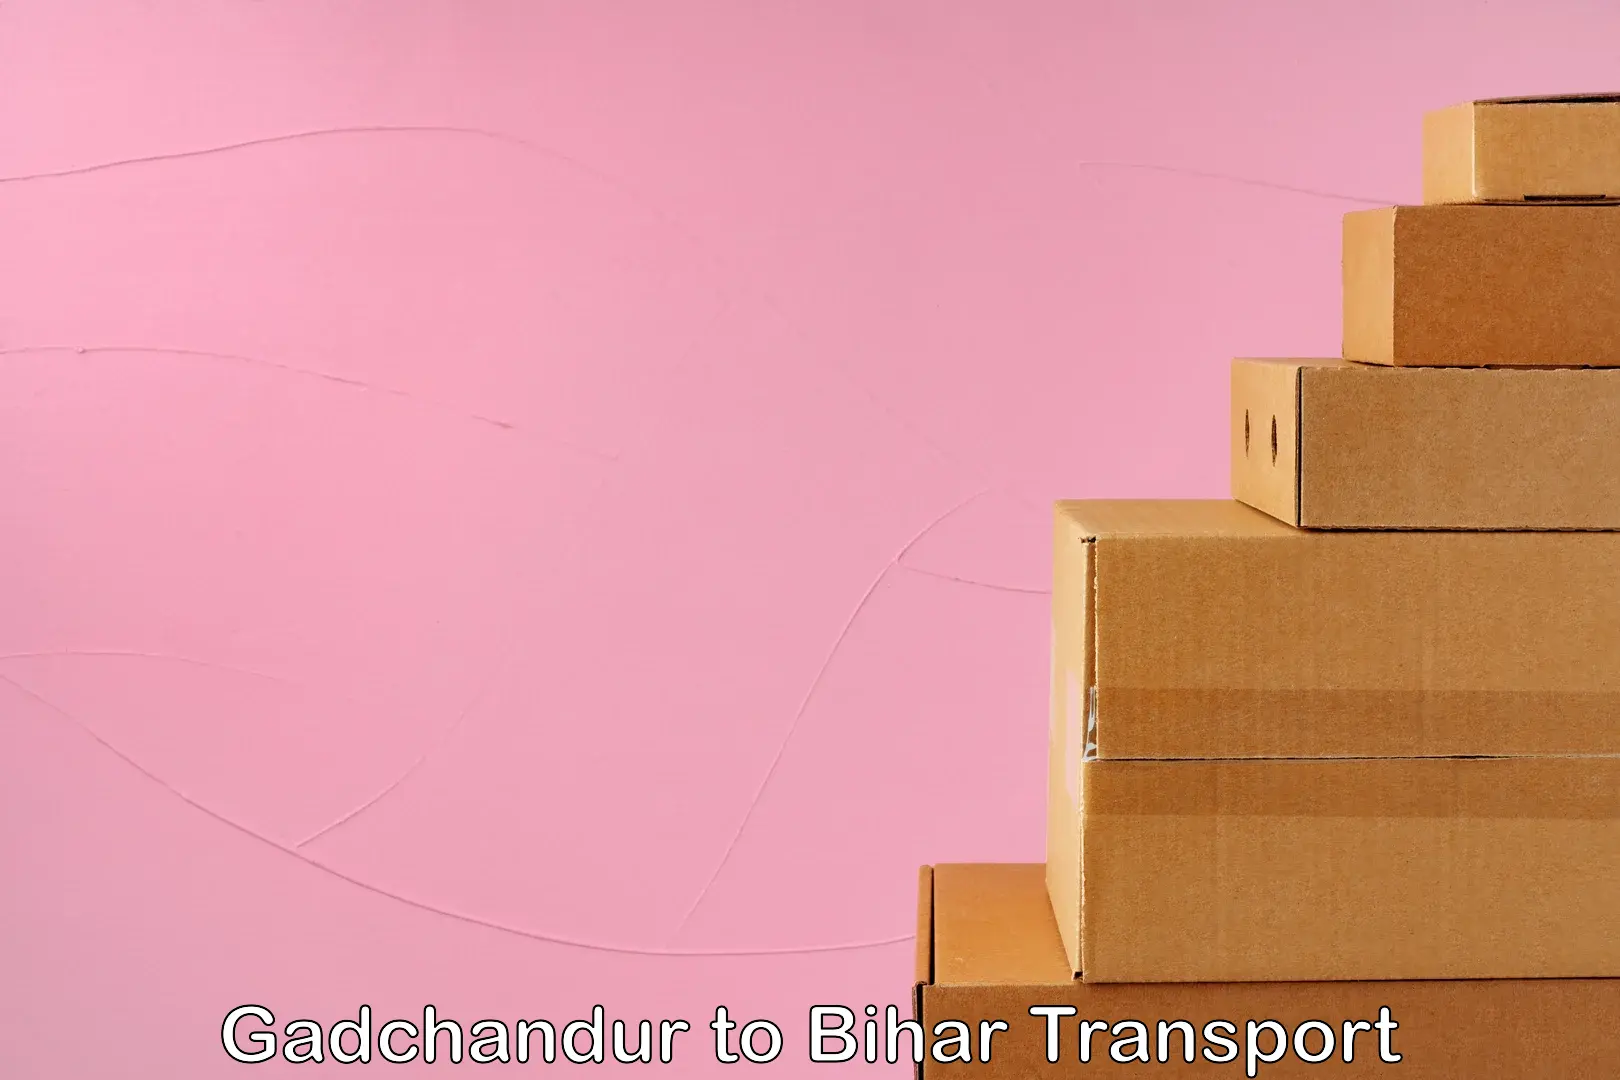 Air cargo transport services in Gadchandur to Bihar